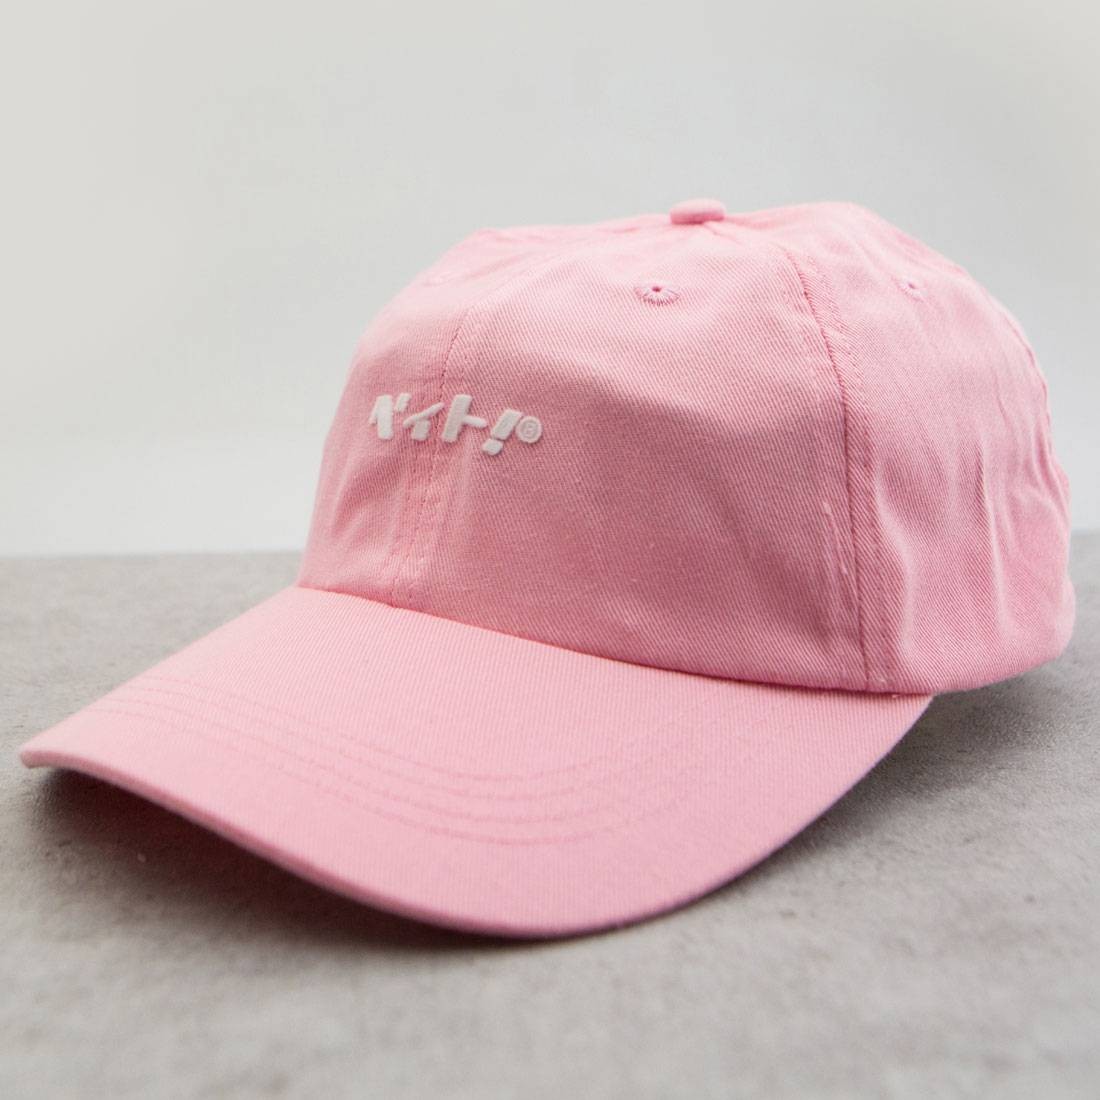 Cheap Urlfreeze Jordan Outlet Nippon Logo Dad Cap (light pink)